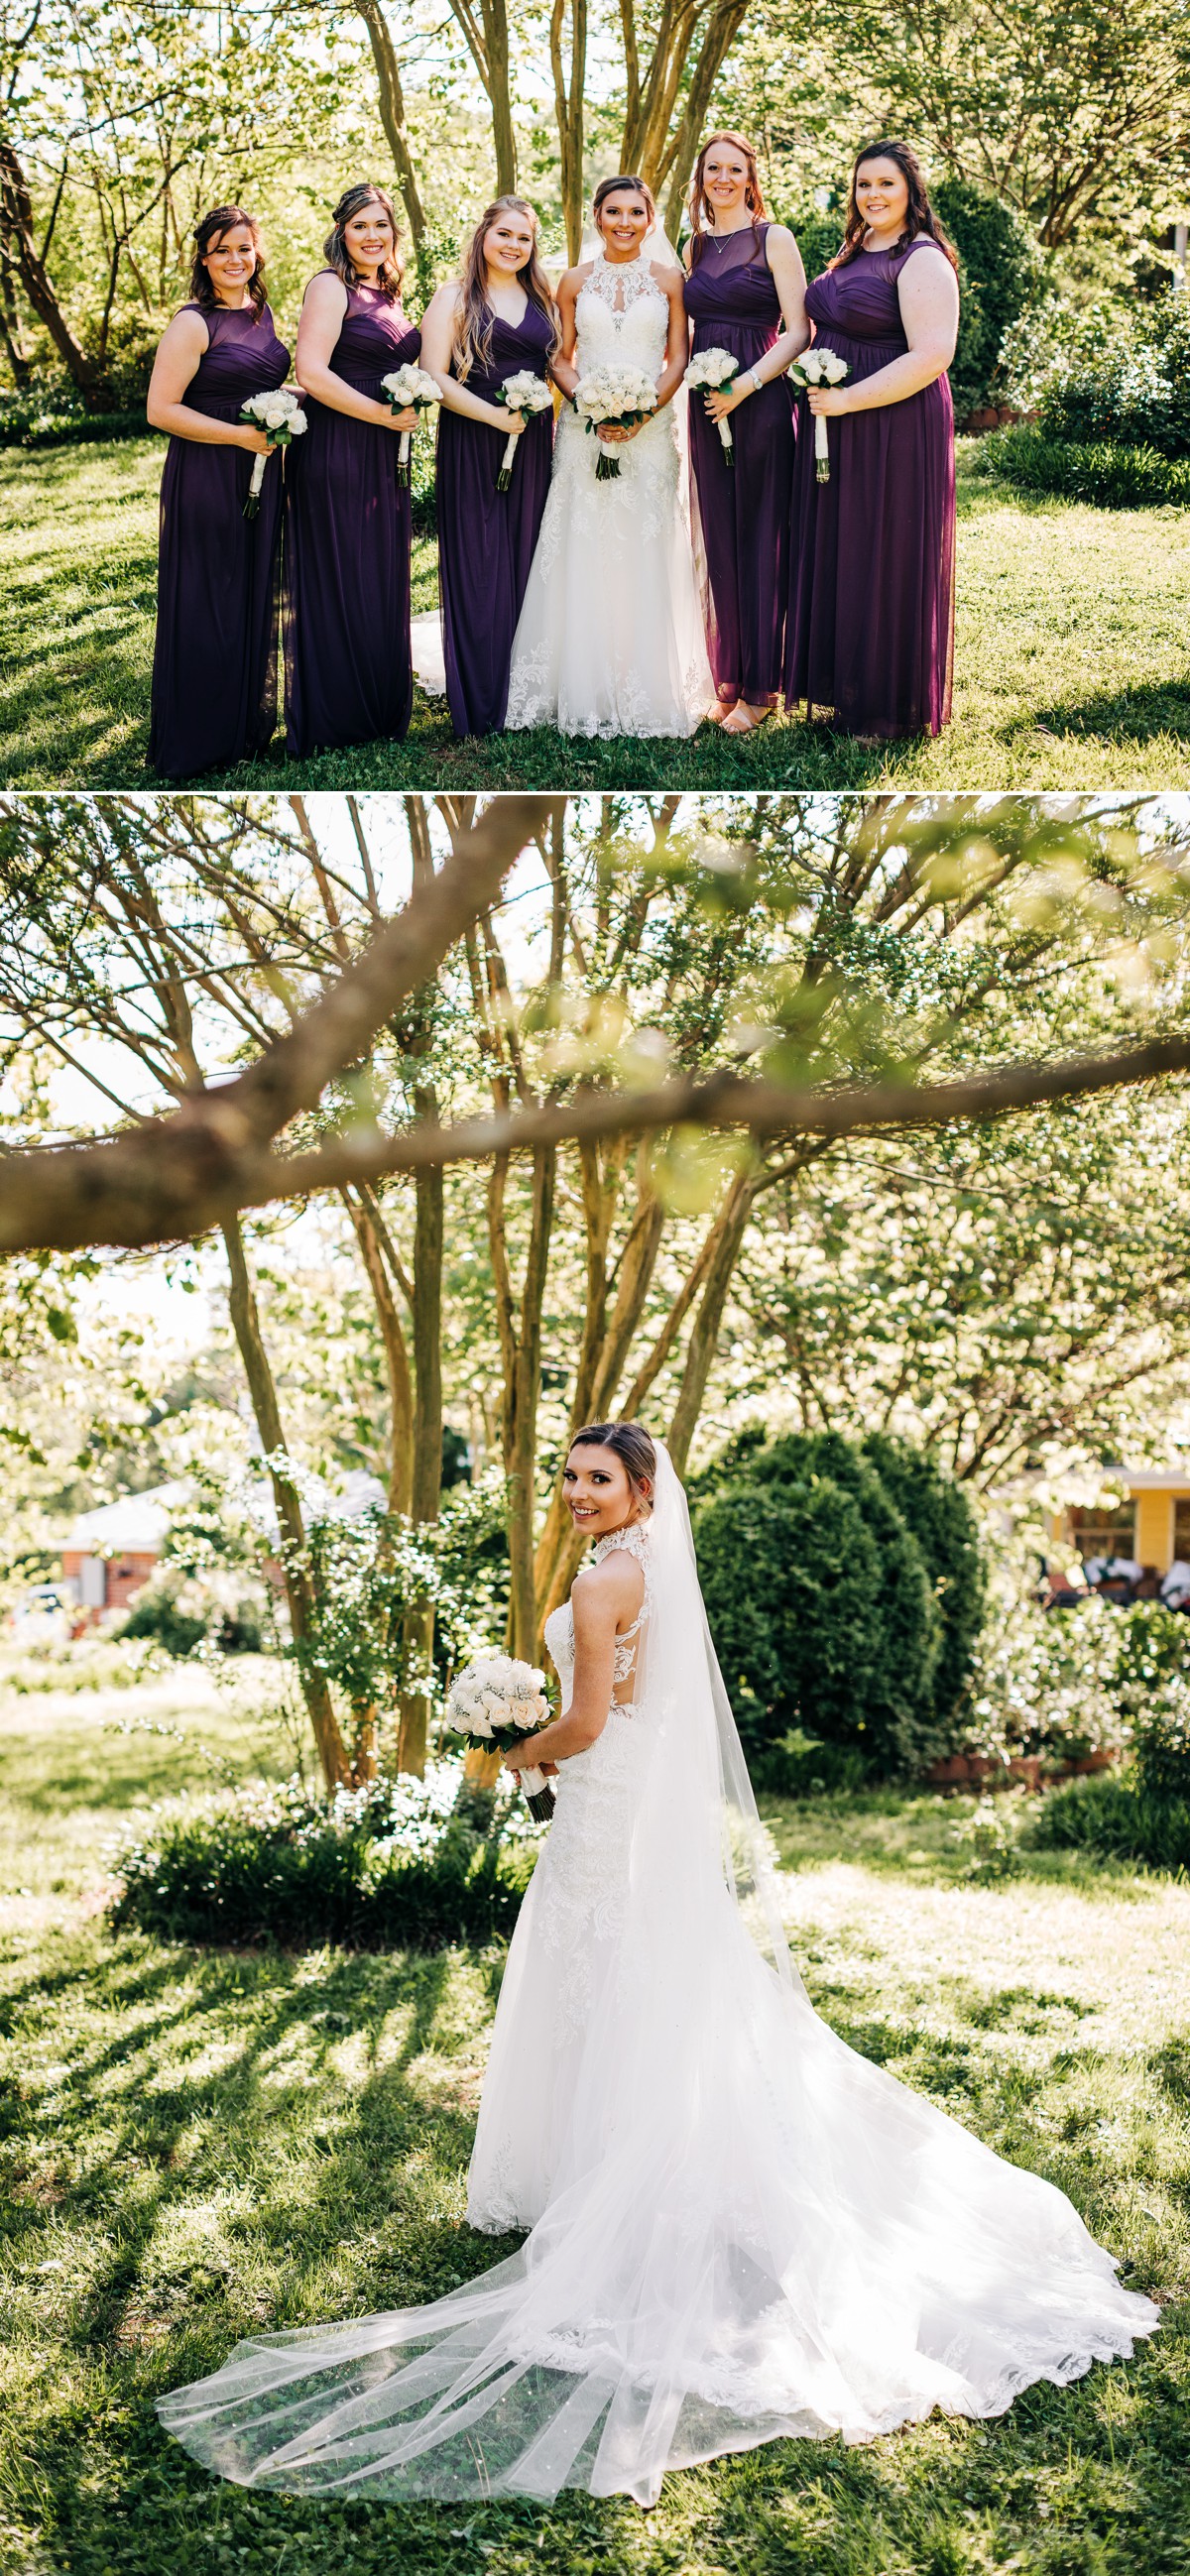 Harmony Wedding Photographer, Wedding at 1812 Hitching Post in Harmony NC, Backyard Eclectic Wedding